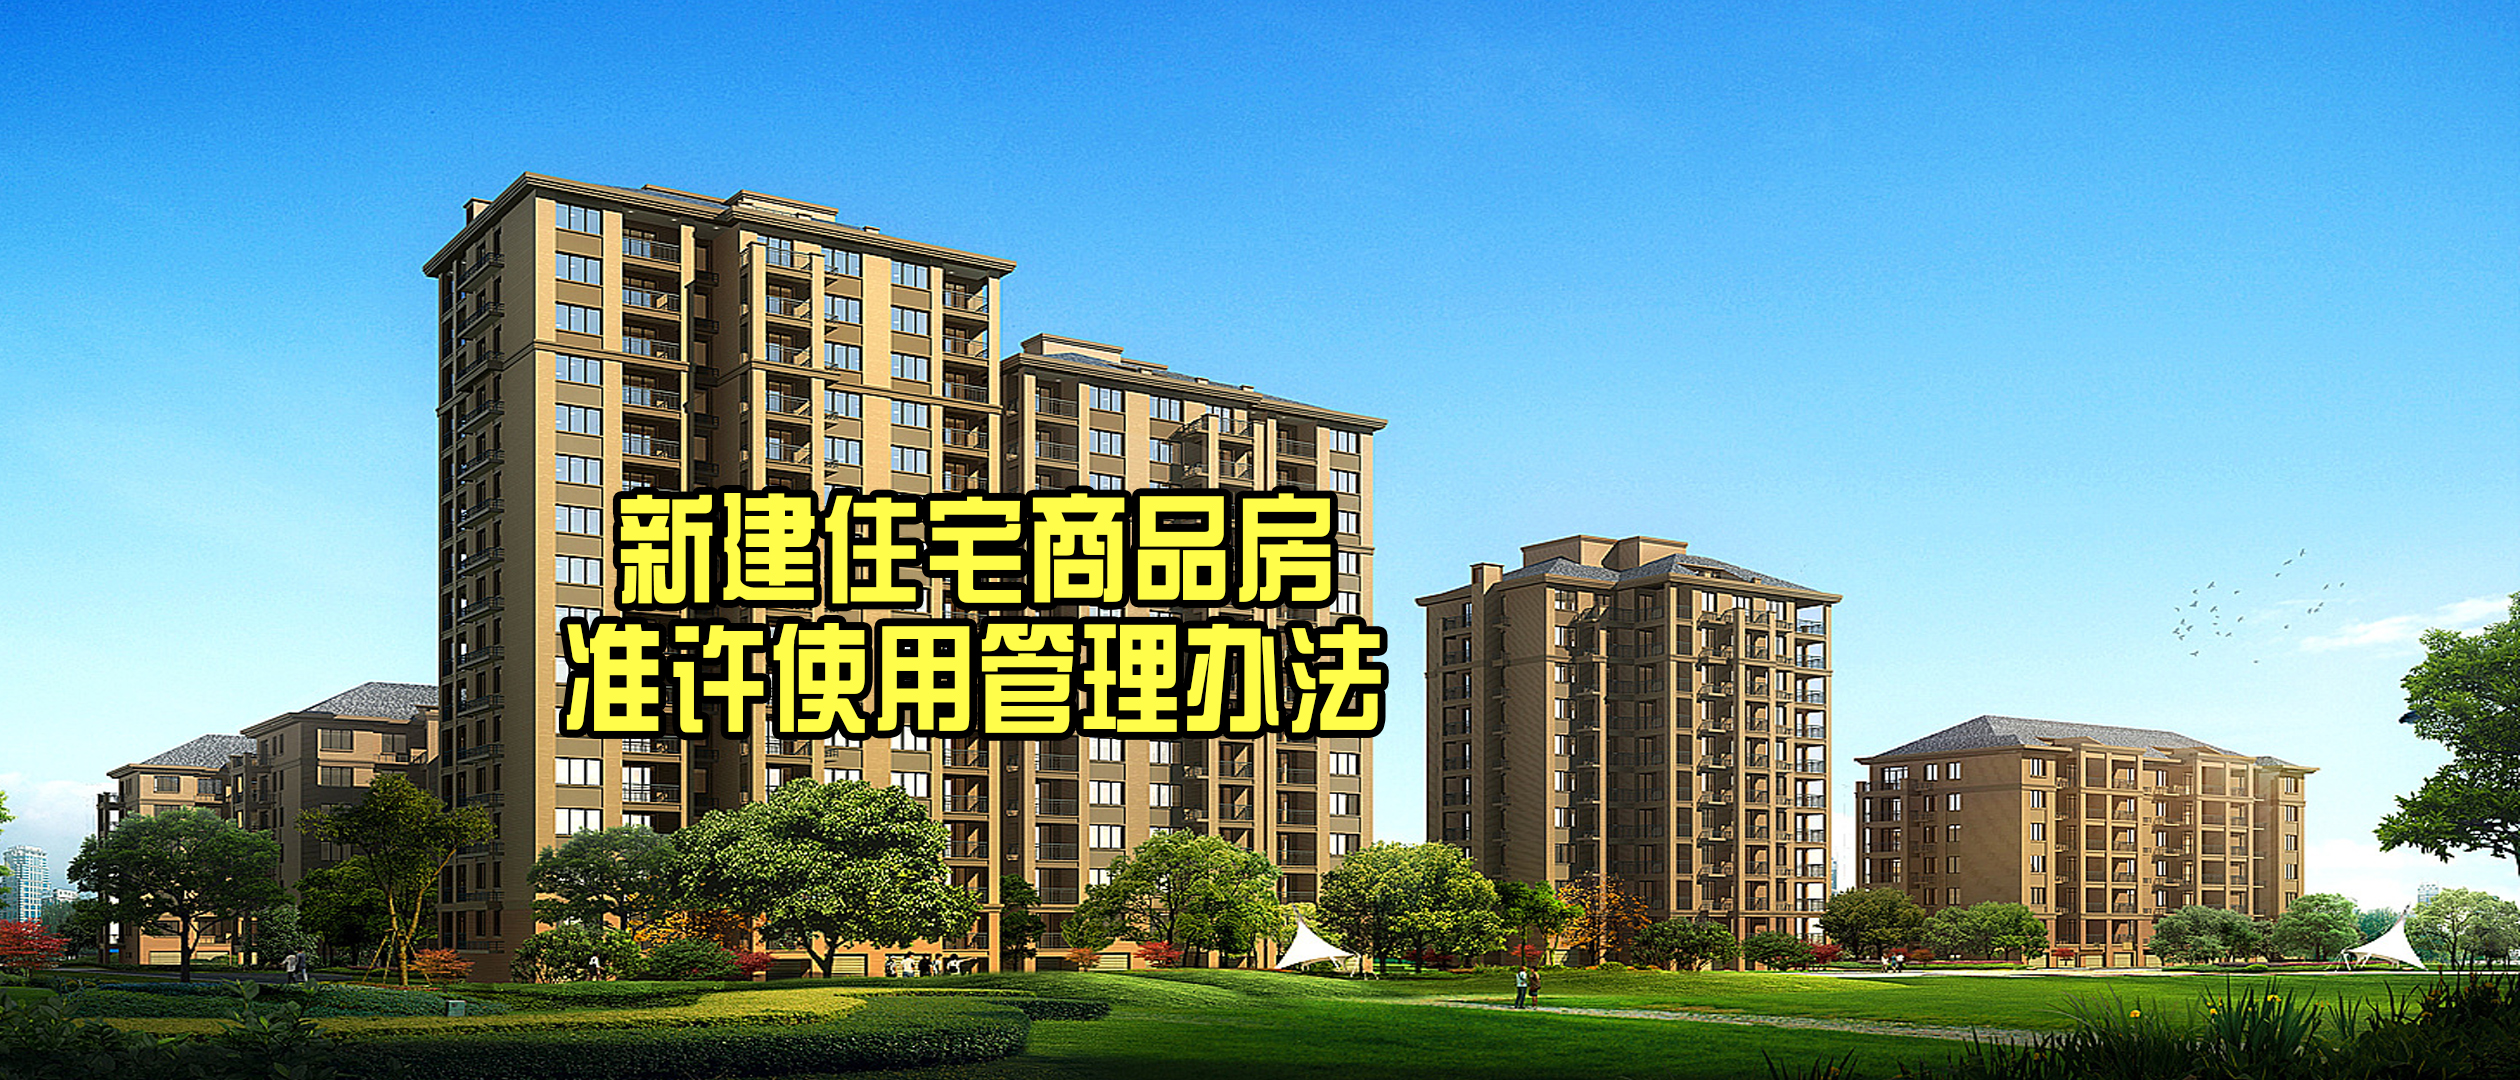 《天津市新建住宅商品房准许使用管理办法》下月施行